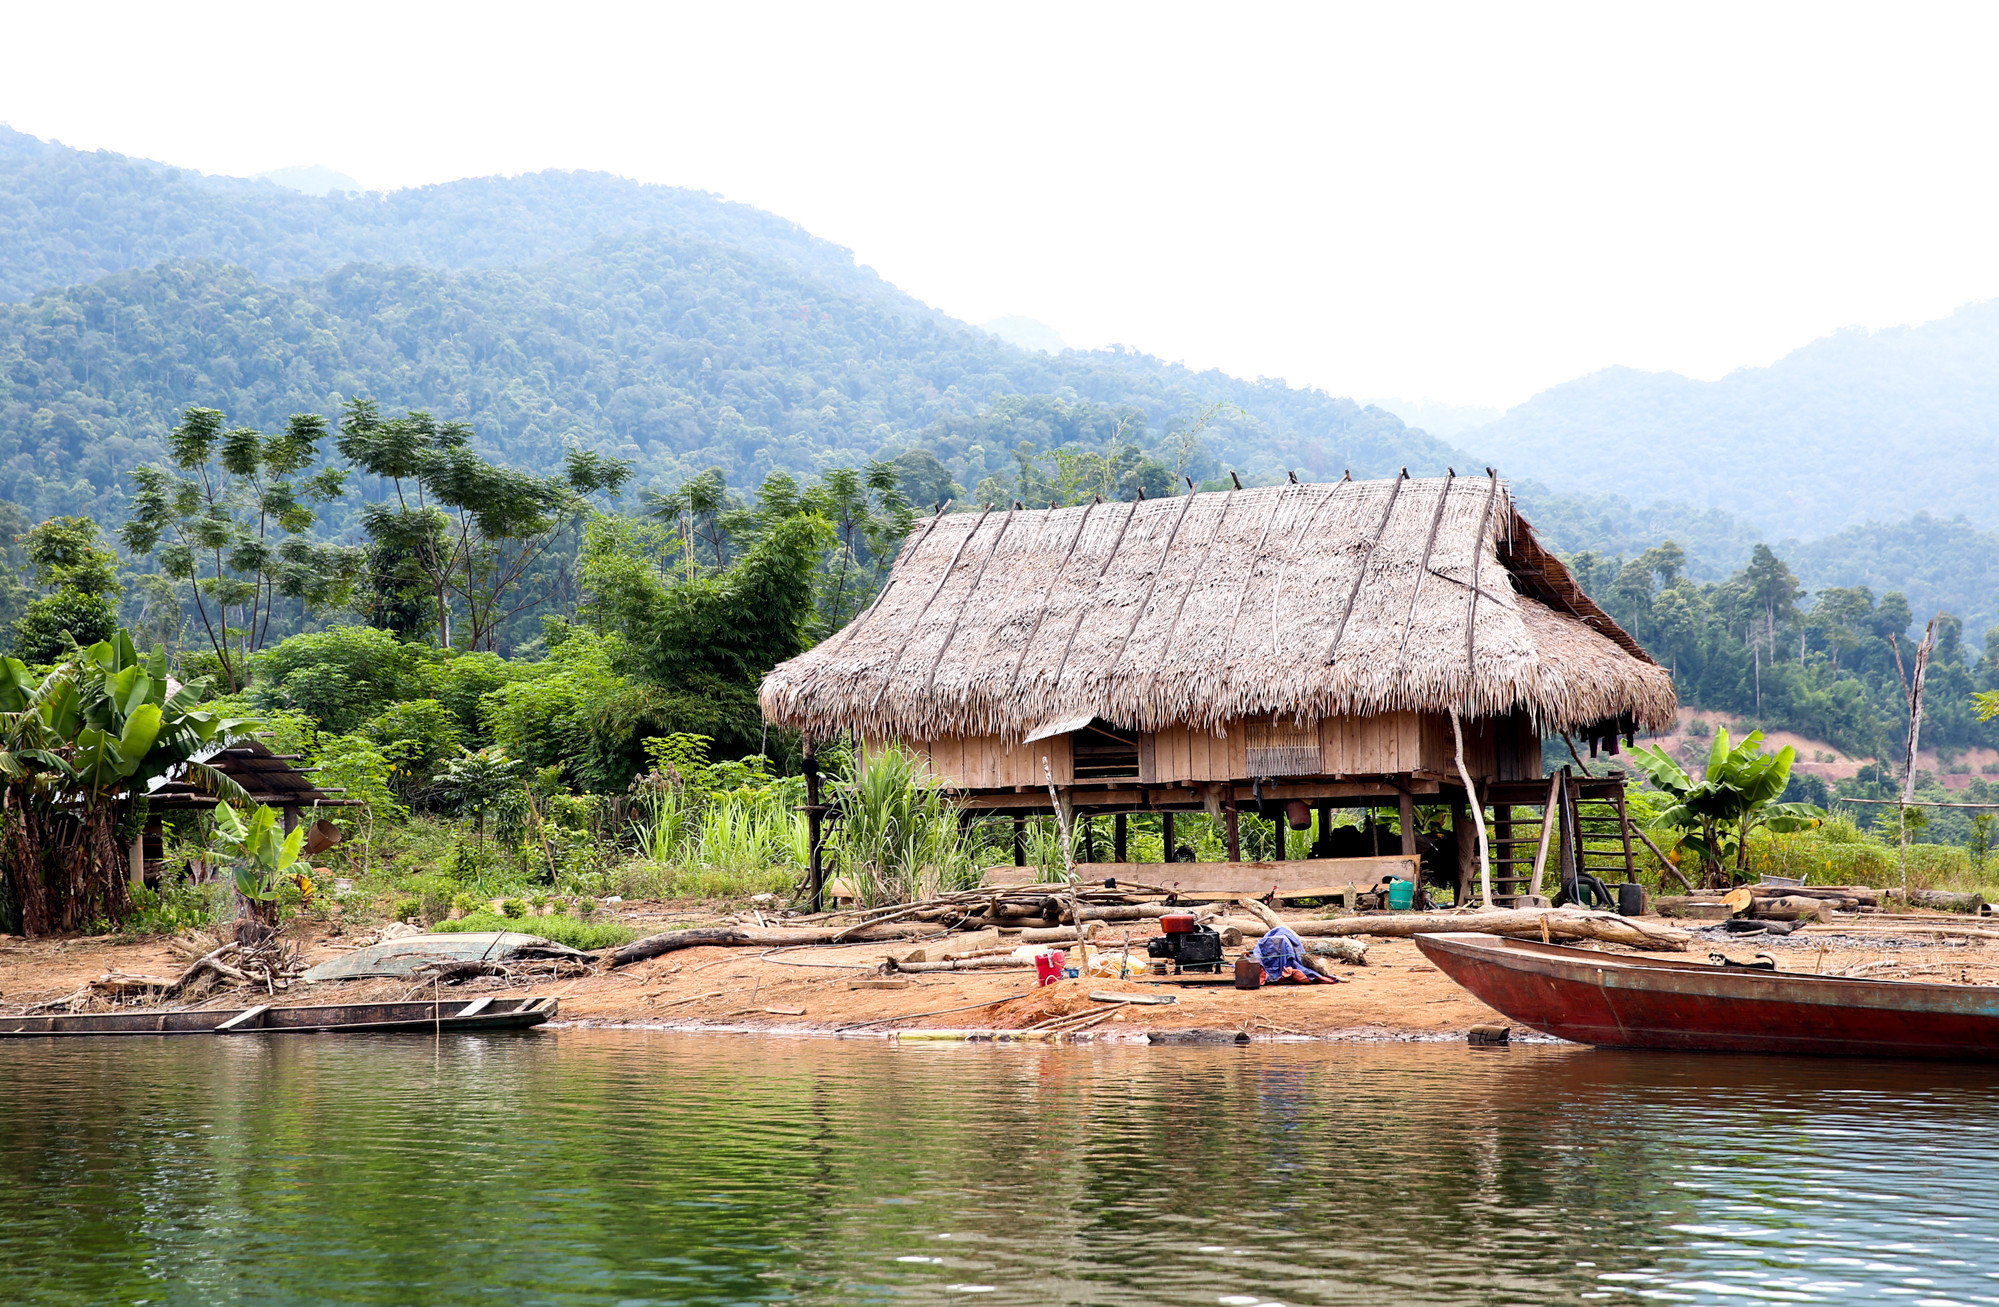 Năm 2013, trước cuộc sống khó khăn ở khu tái định cư, nhiều thanh niên trong làng đã bỏ xứ đi đến các vùng miền khác để làm ăn, riêng Lang Văn Mão trở về các ốc đảo heo hút trên hồ thủy điện Hủa Na để tìm kế sinh nhai.